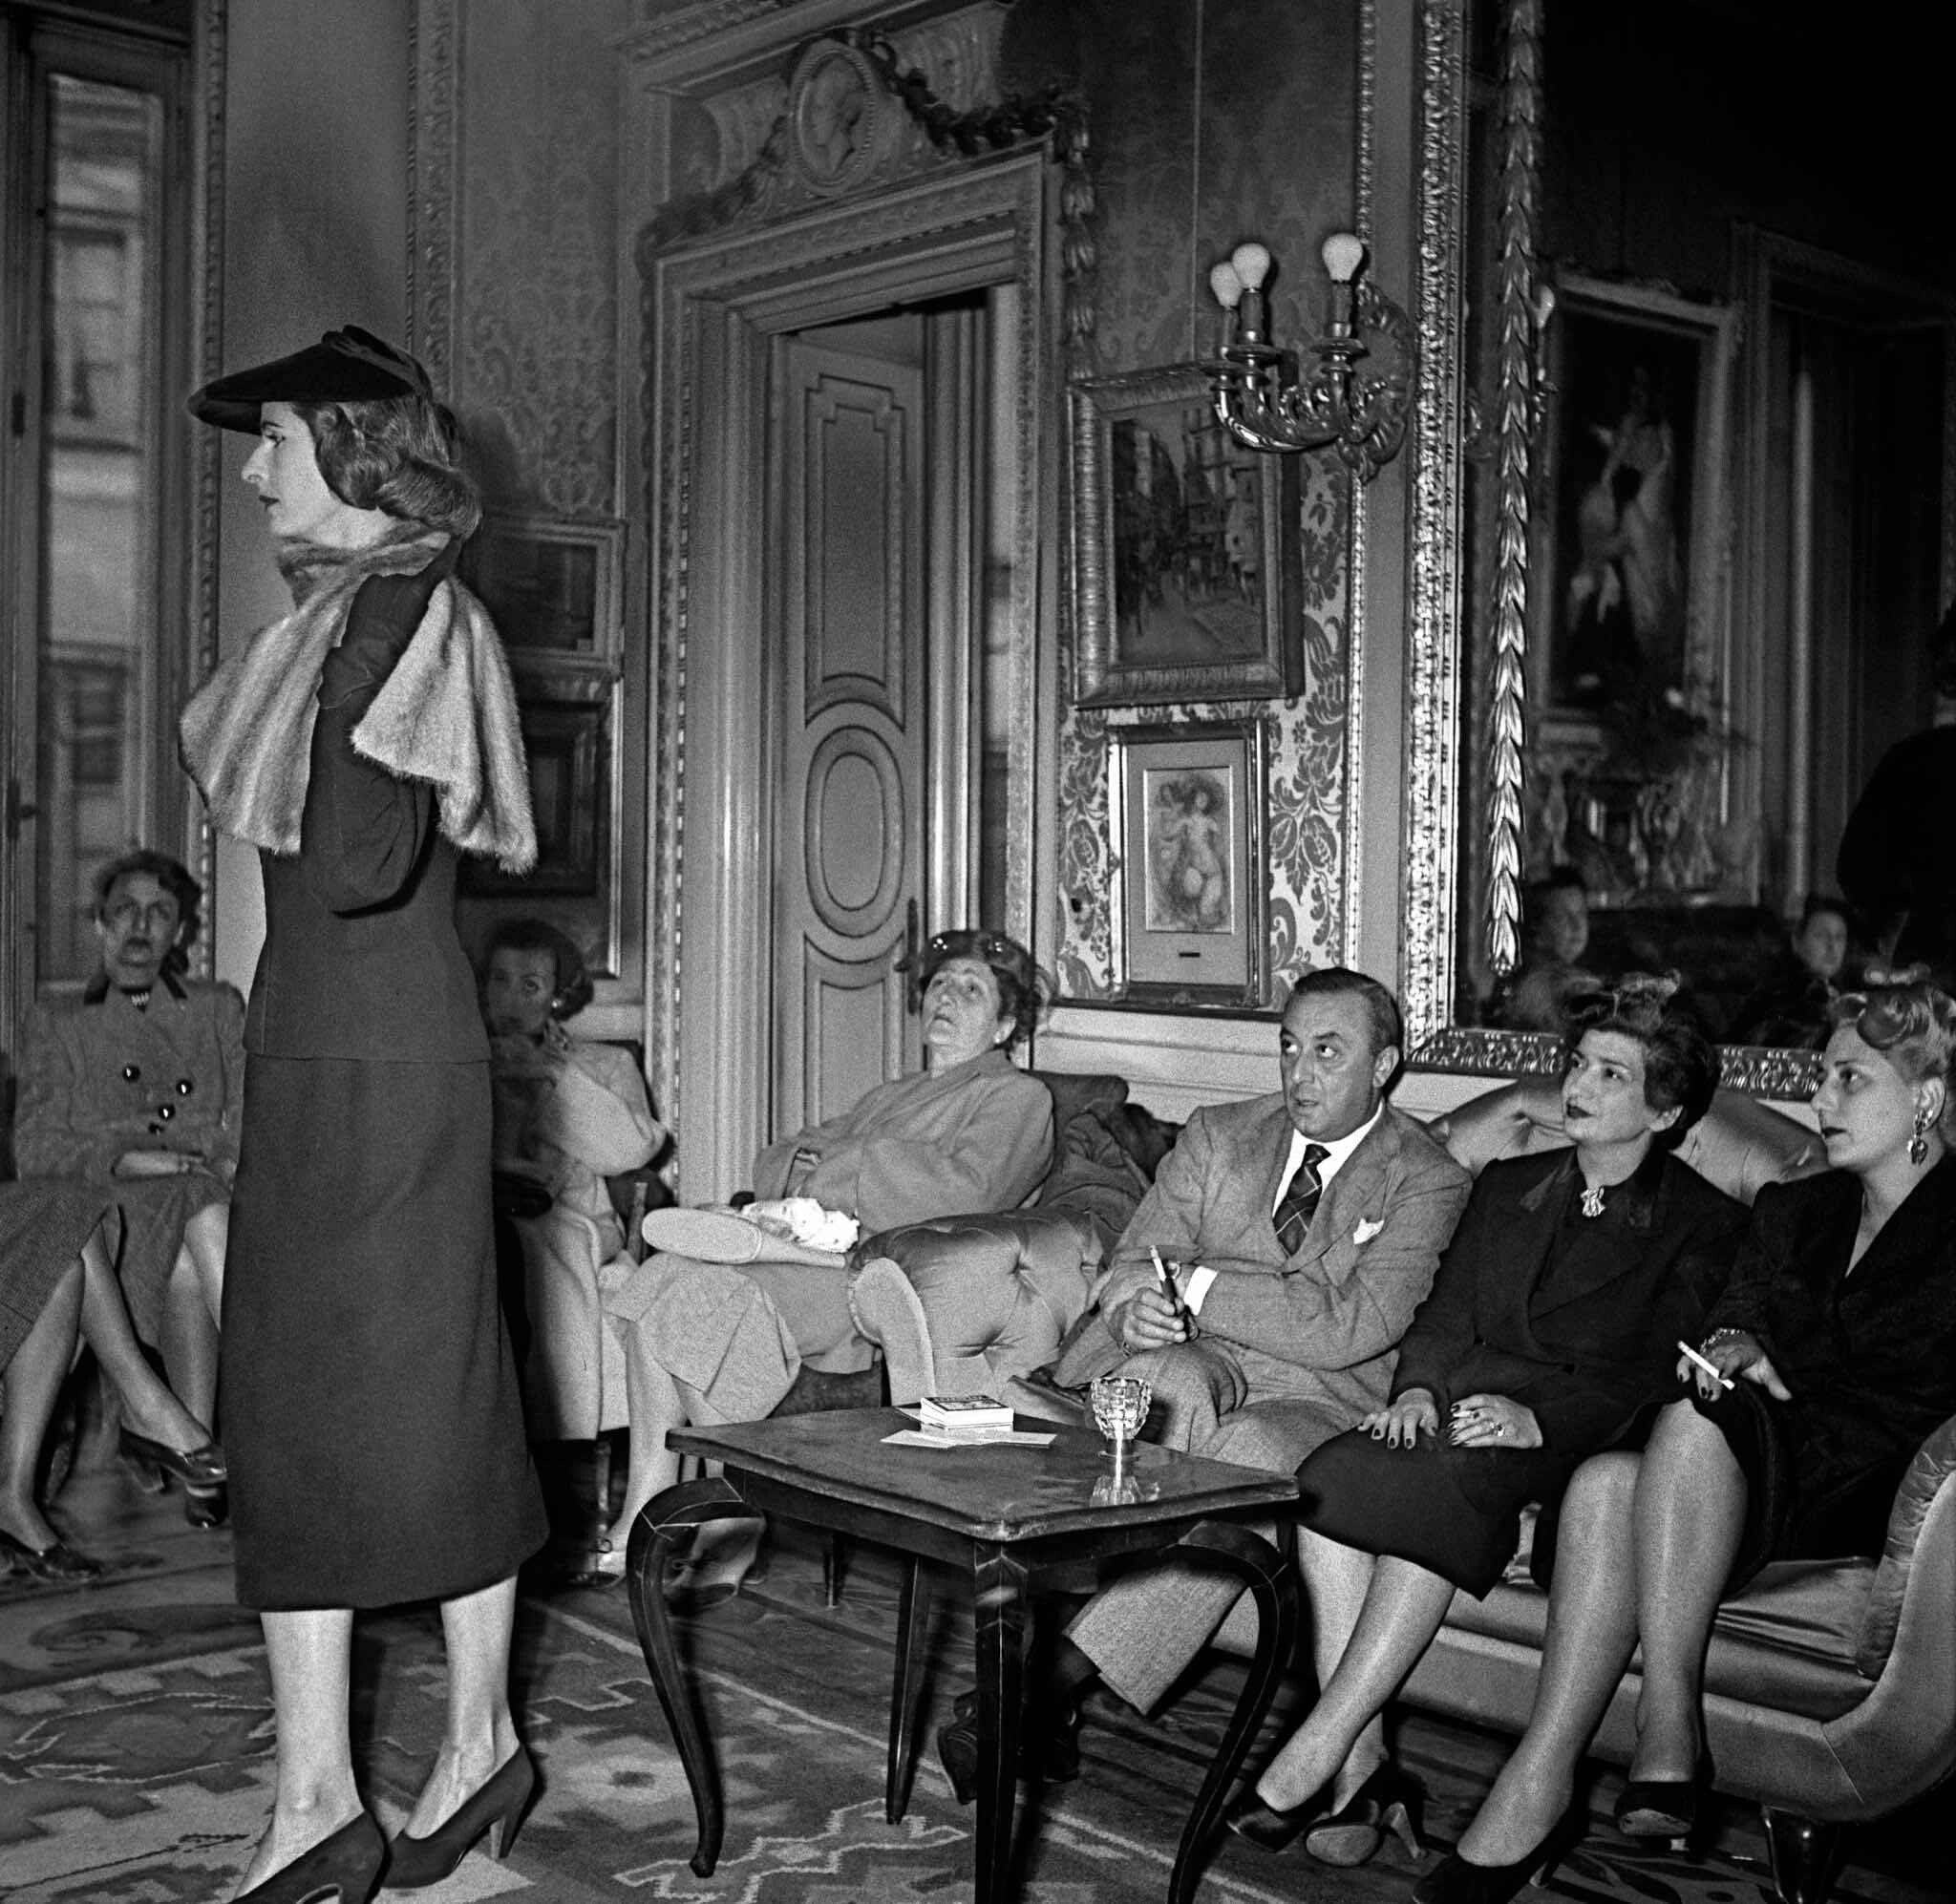 Венеция, Италия, модель на показе мод, 1950 год. Фотограф Франк Хорват